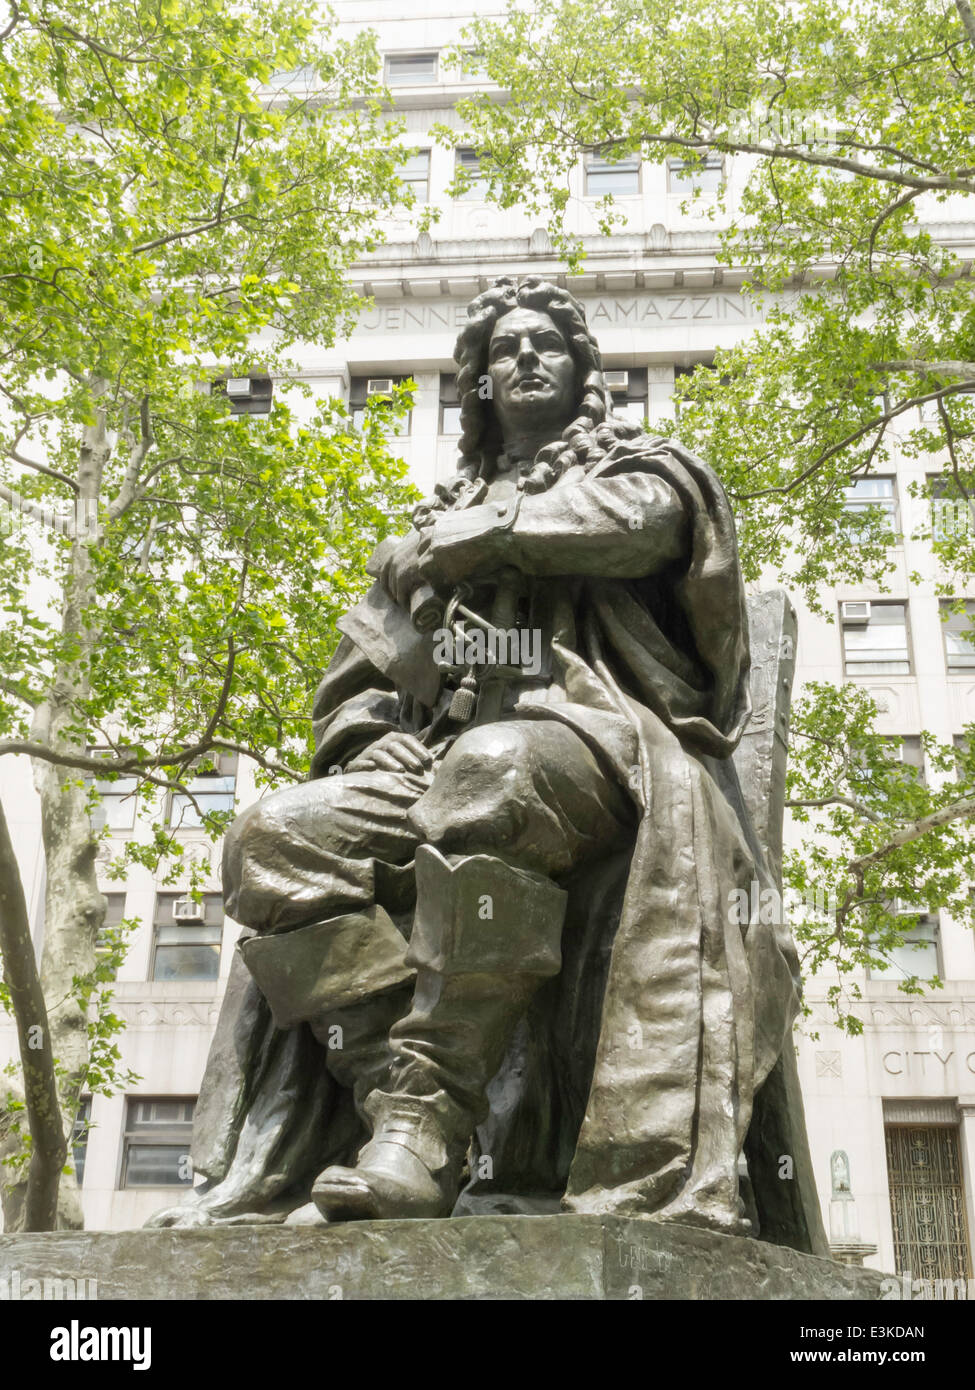 Abraham de Peyster Sculpture dans le parc de Thomas Paine, Foley Square, NYC, USA Banque D'Images